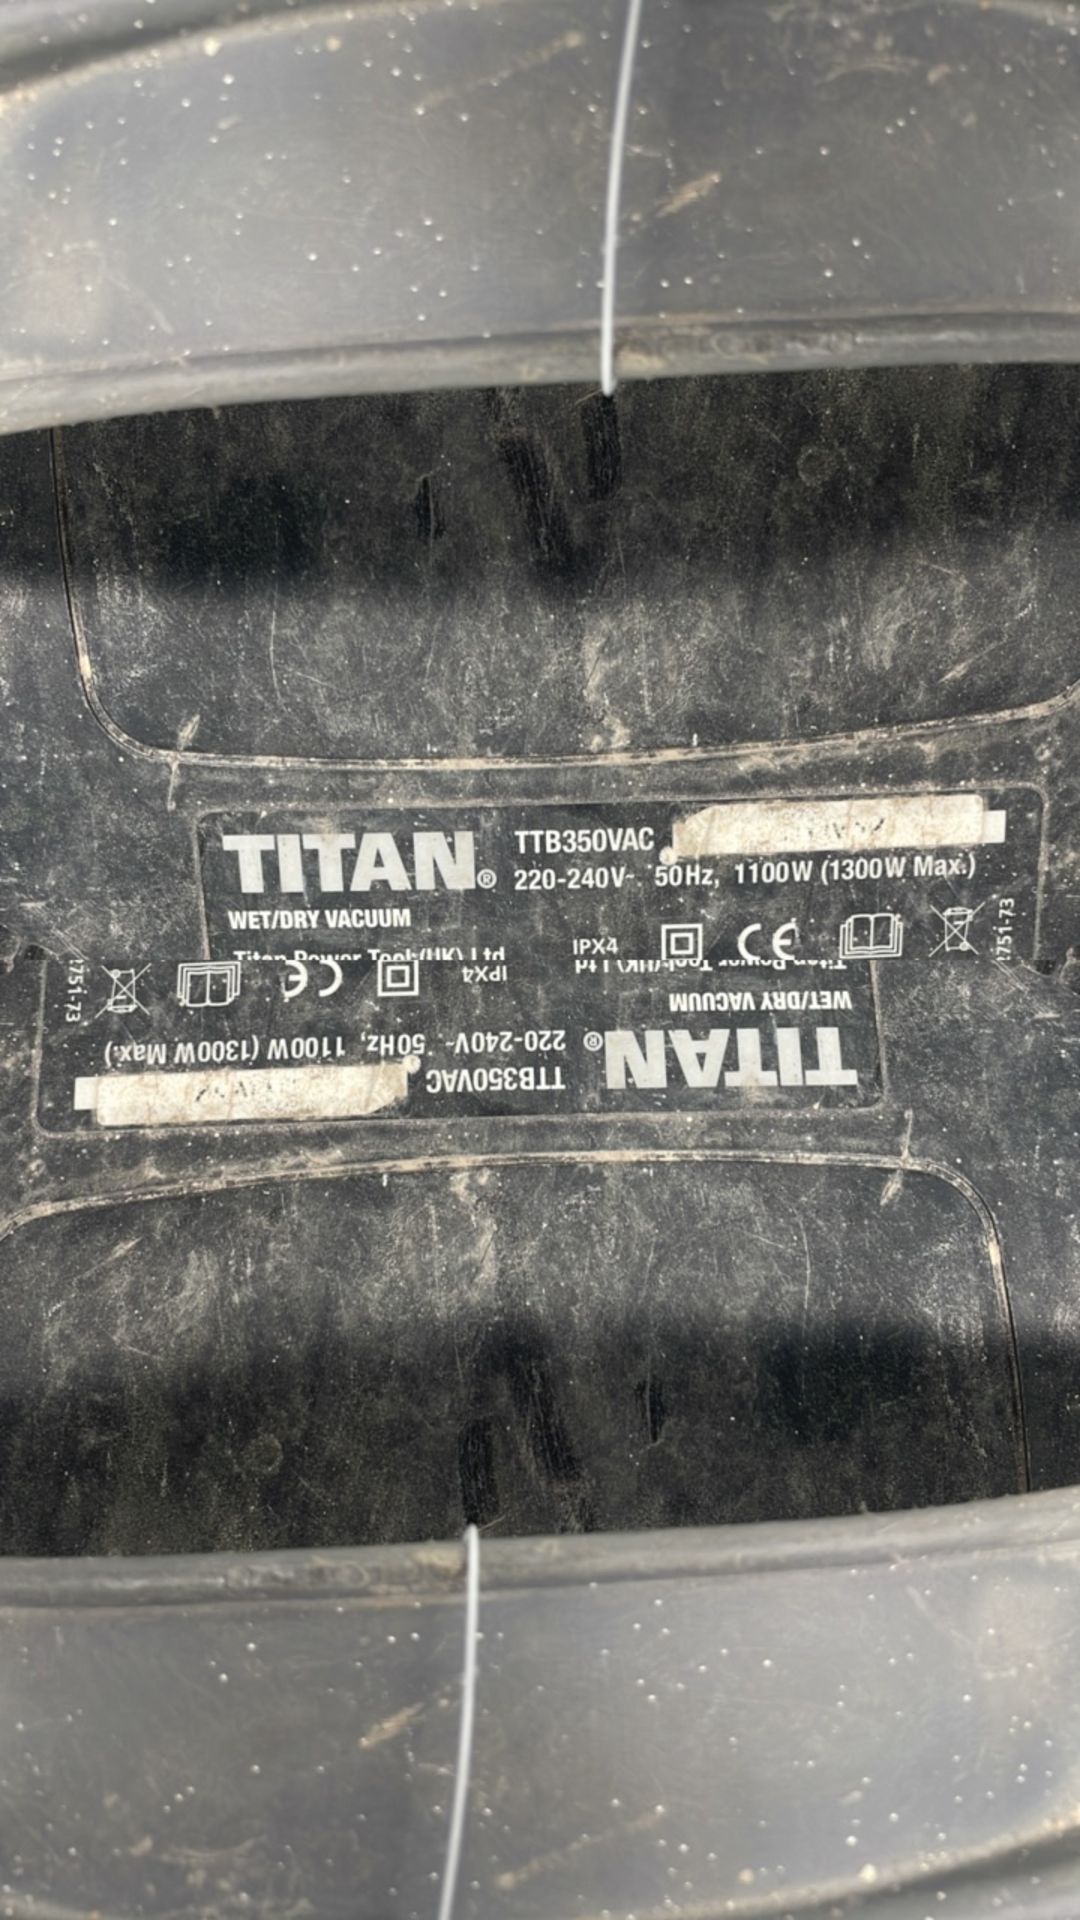 Titan TTB350VAC Wet & Dry Vacuum Cleaner - Image 3 of 3